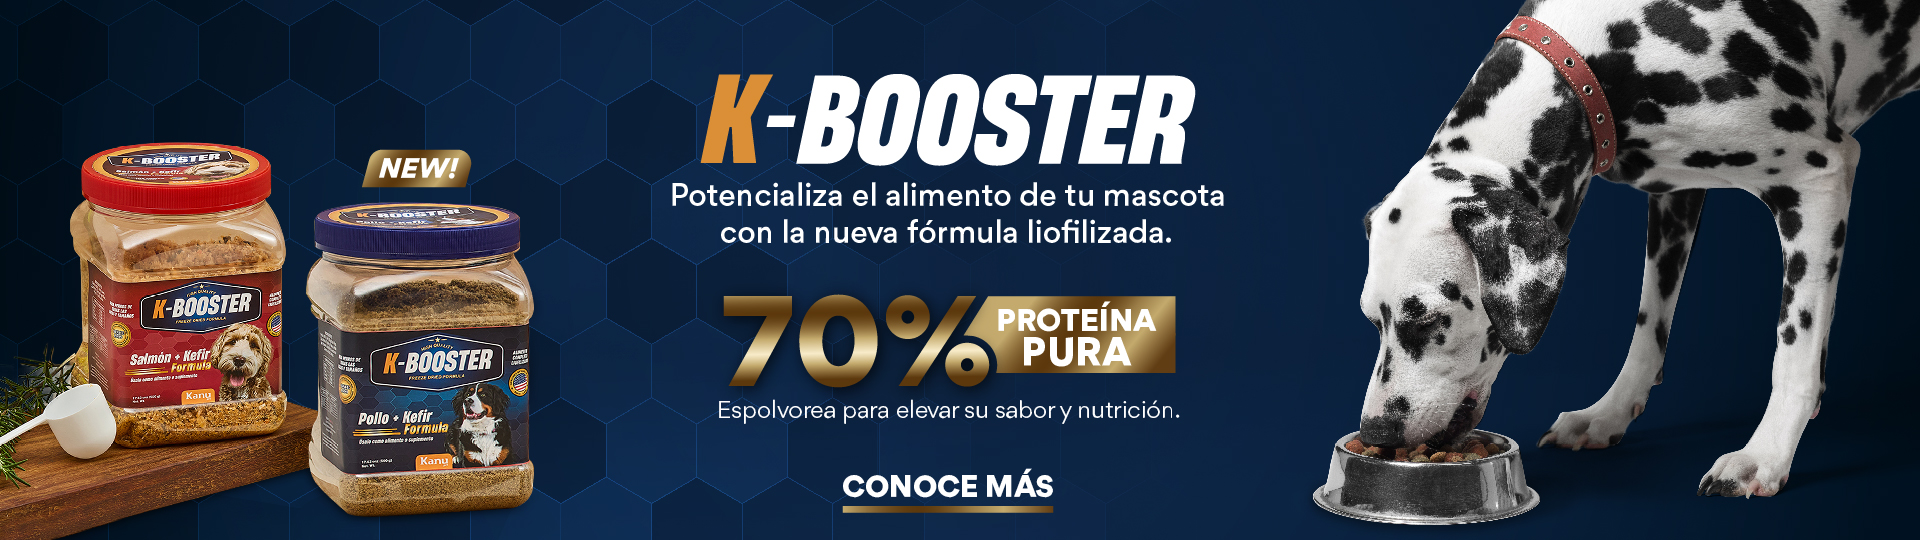 K Booster alimento para mascotas